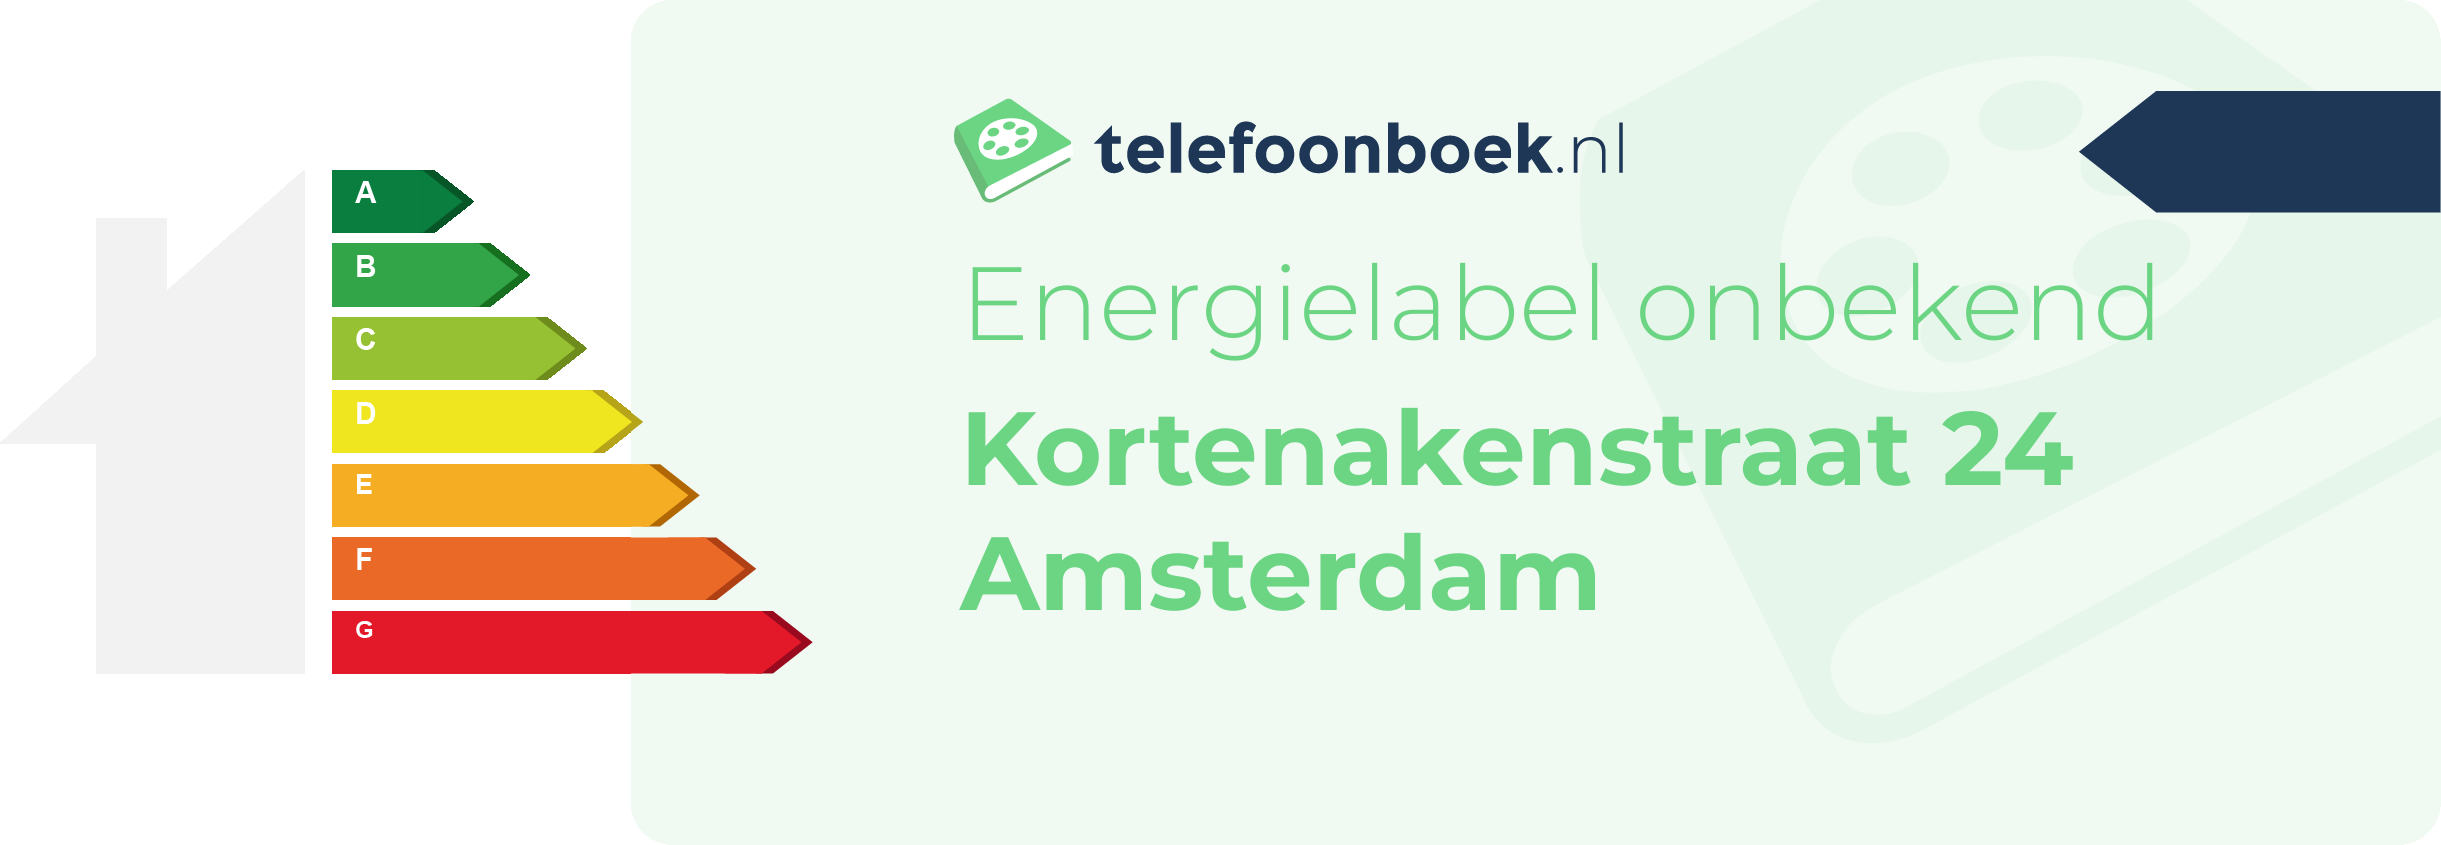 Energielabel Kortenakenstraat 24 Amsterdam